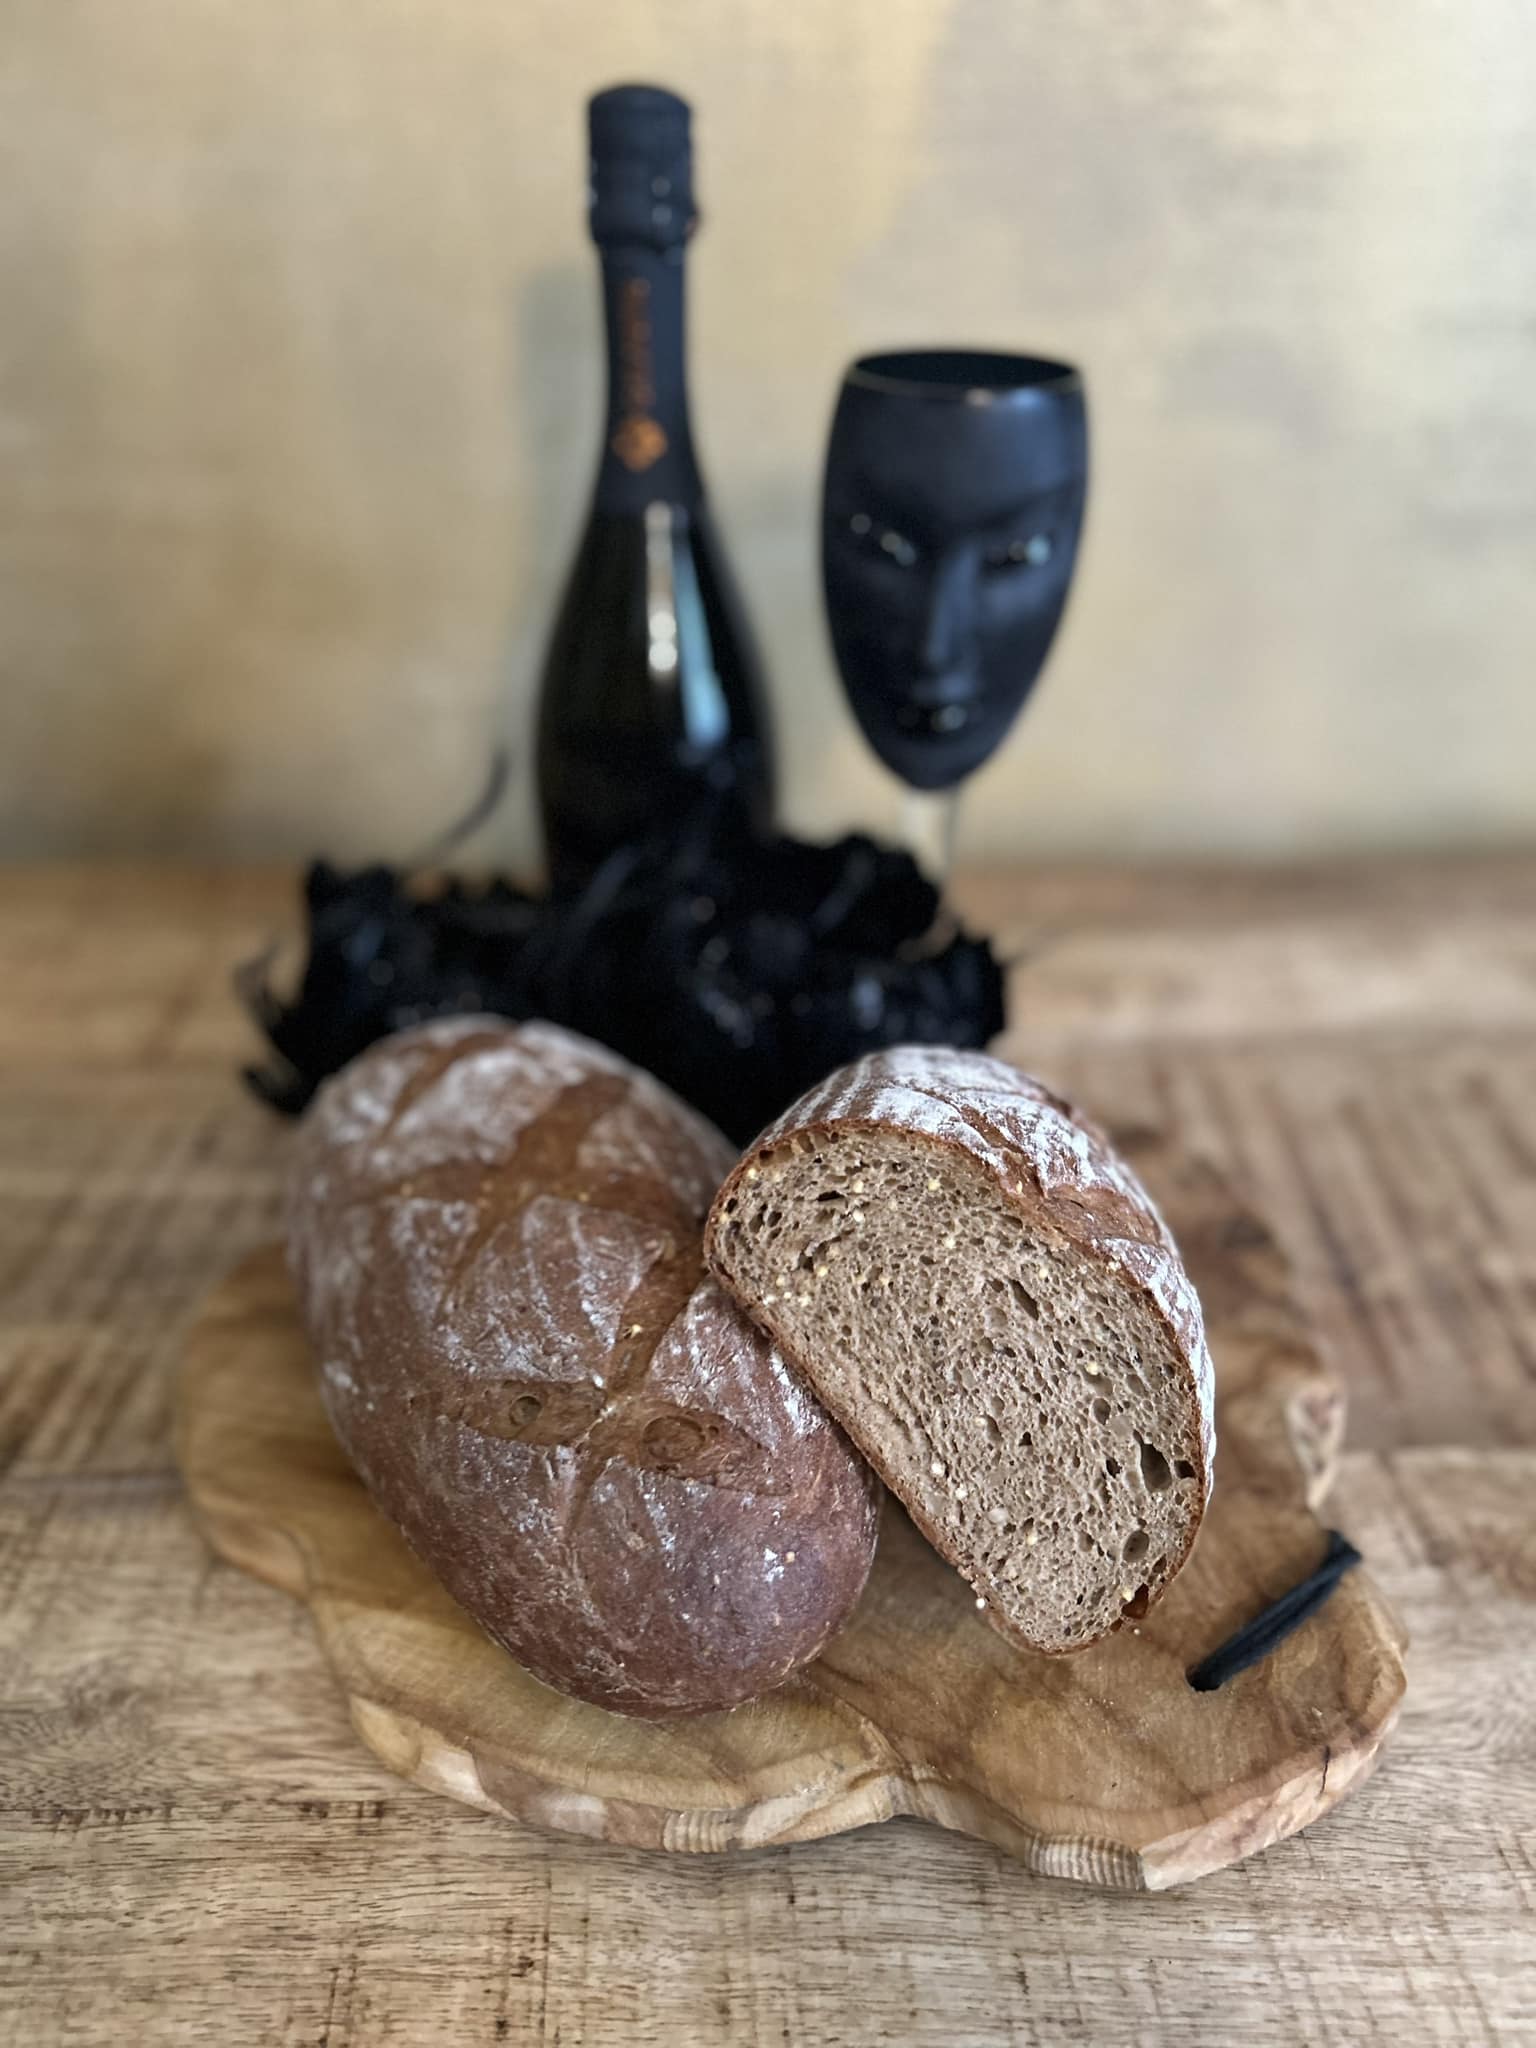 Sedlácký chléb z žitné mouky, čerstvý a křupavý - ochutnejte novinku z naší pekárny